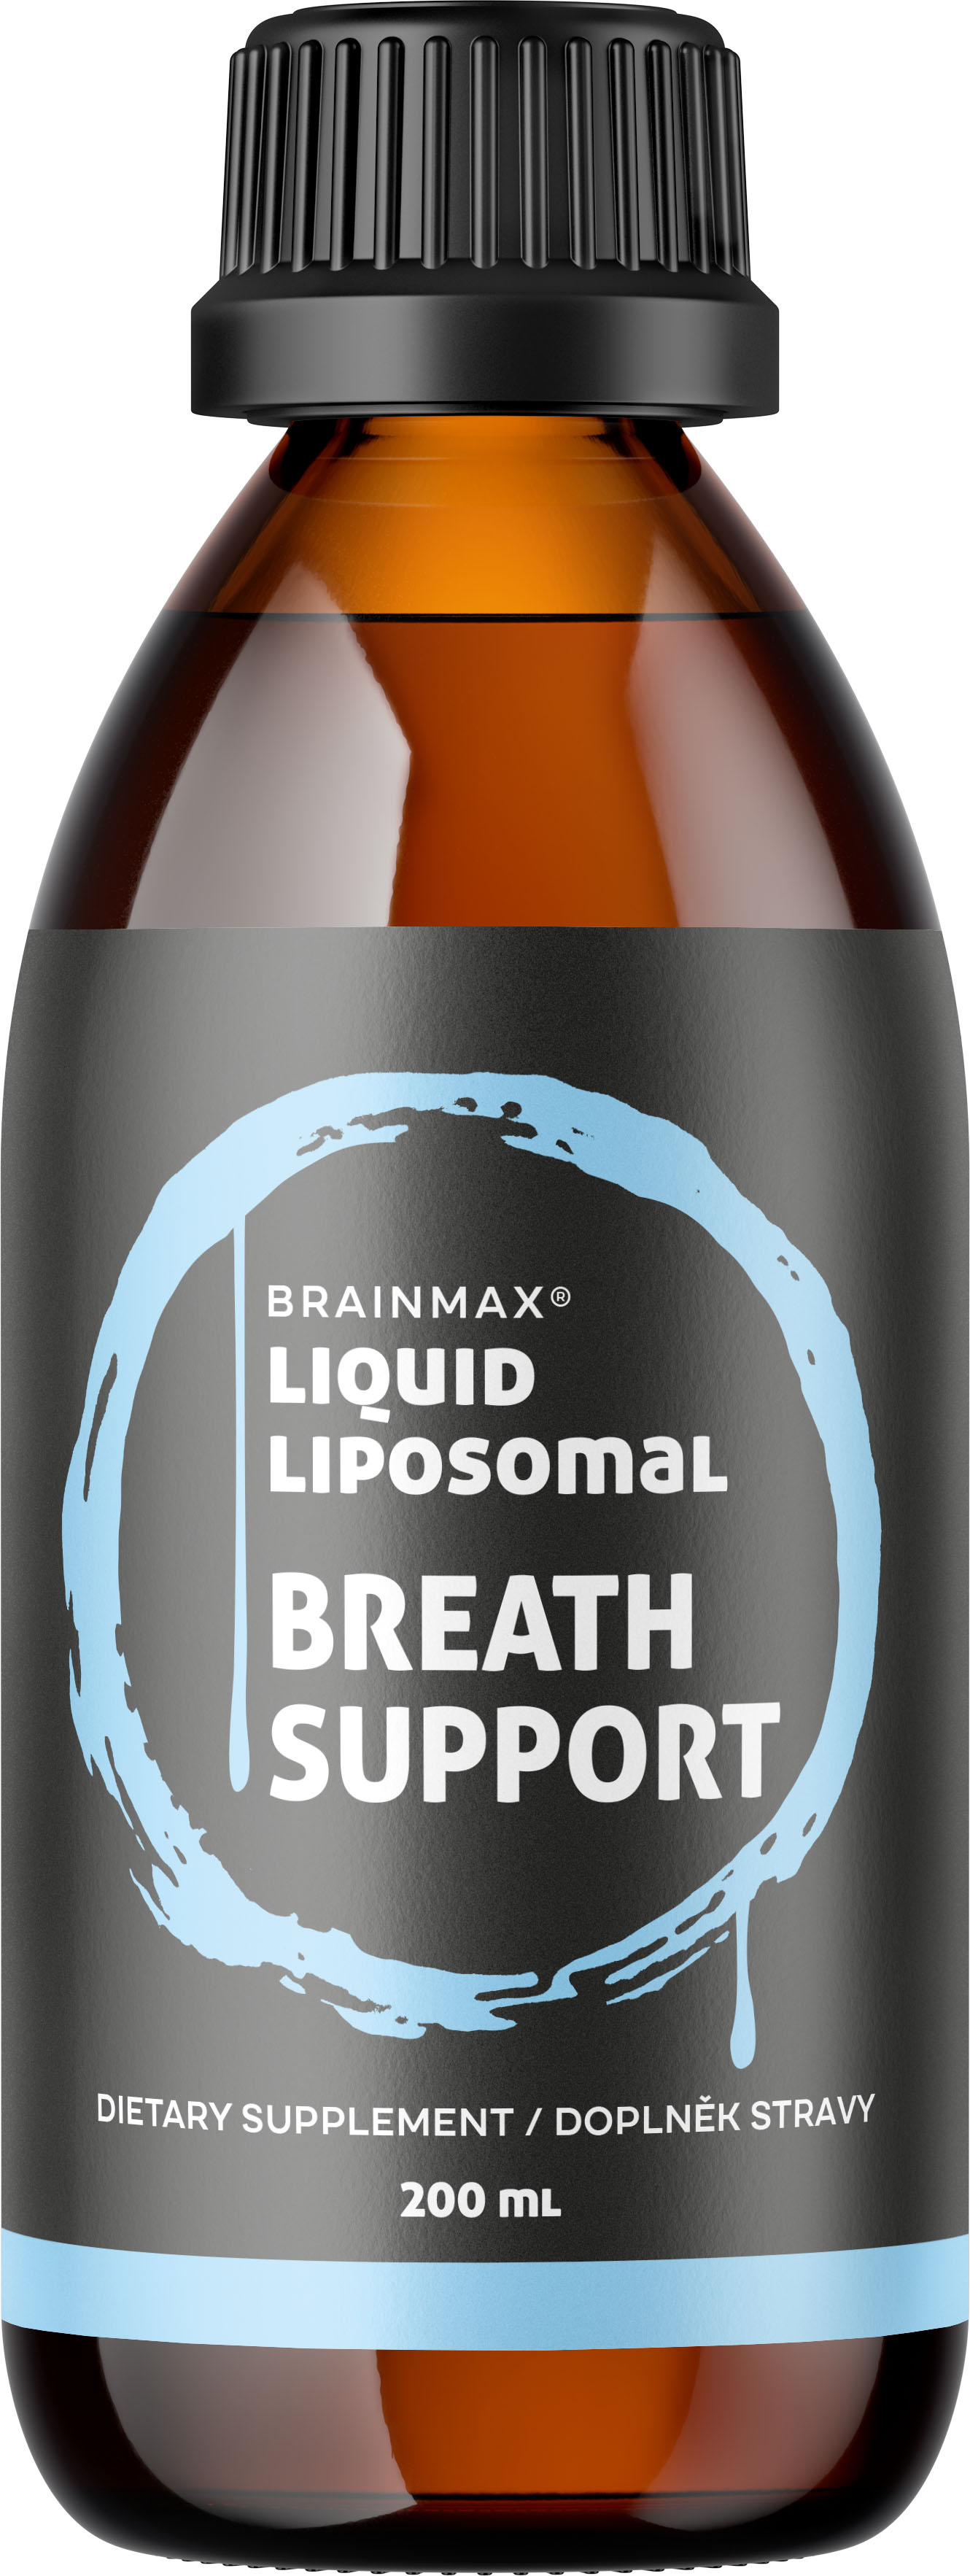 BrainMax Lipozomální komplex pro podporu dýchacích cest, 200 ml BrainMax Breath Support Complex, směs bylin pro uvolnění dýchacích cest a vylučování hlenu, 20 dávek, doplněk stravy